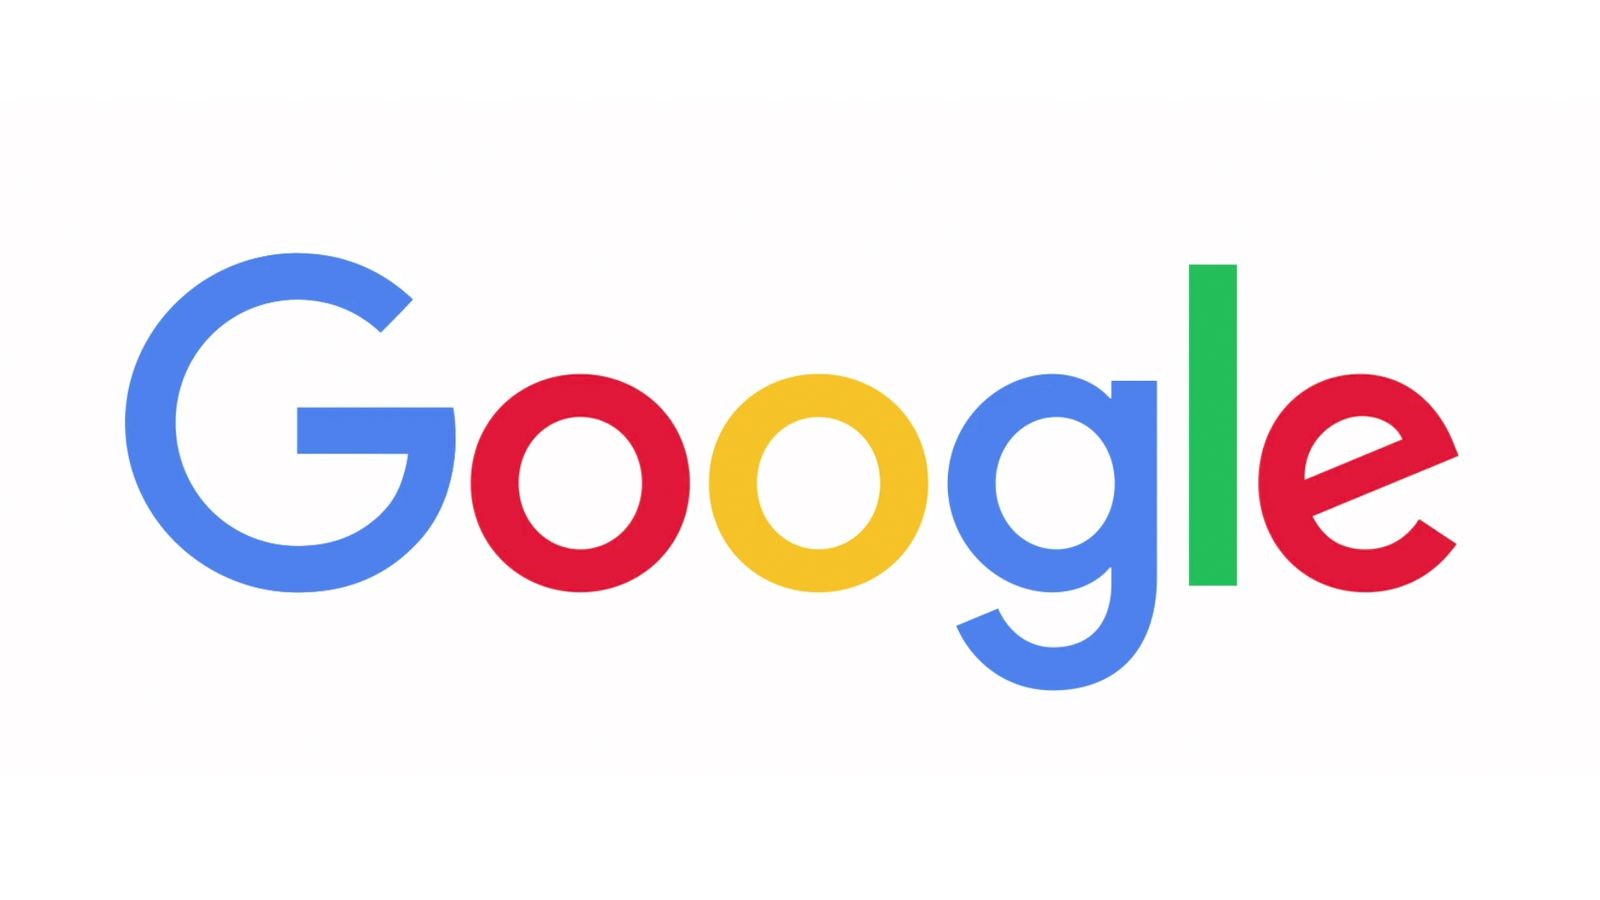 لوگوی شرکت گوگل